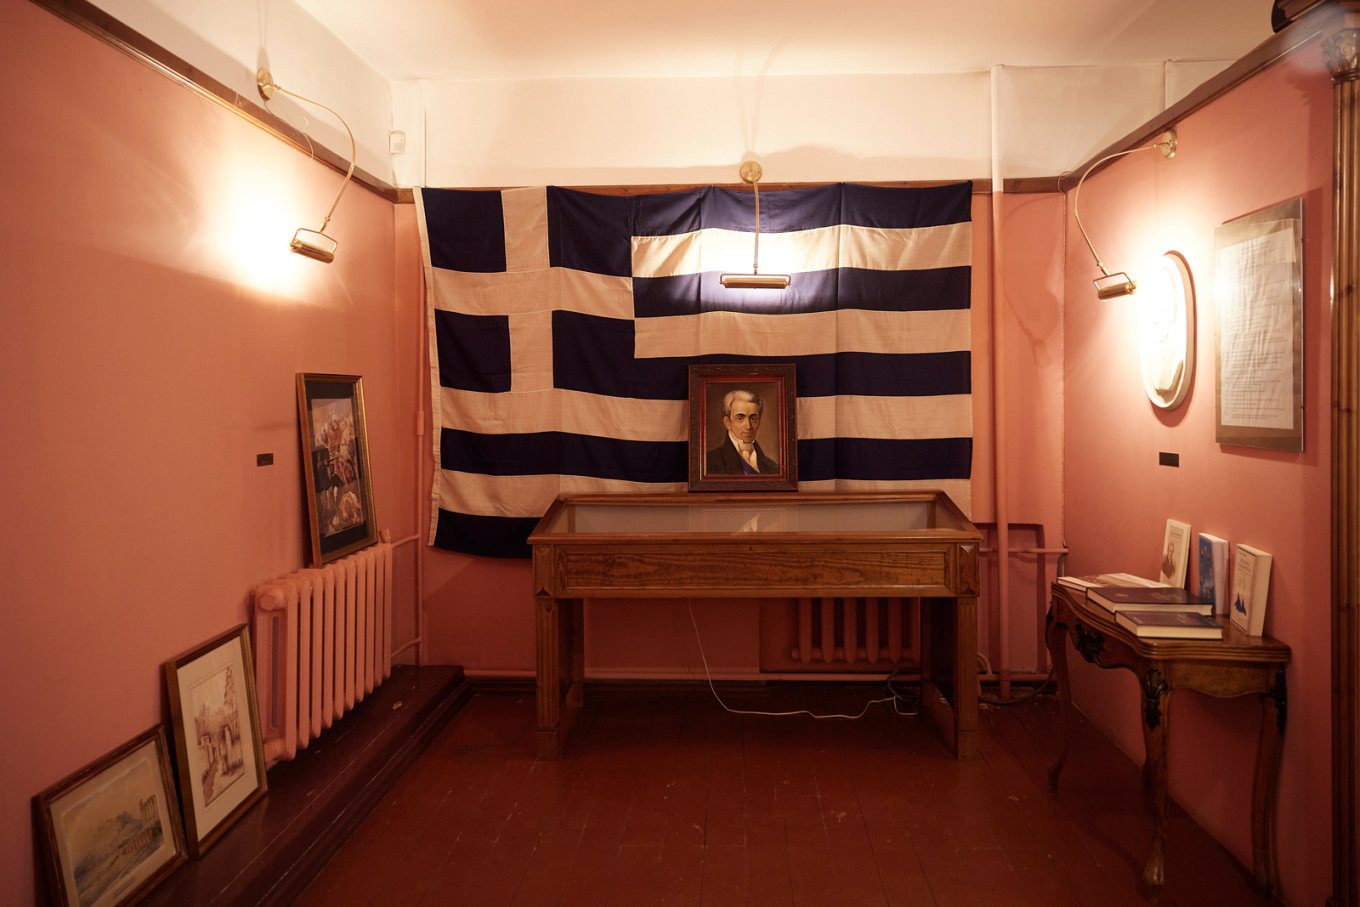 Μητσοτάκης: Η επίσκεψη στο μουσείο της Φιλικής Εταιρείας στην Οδησσό